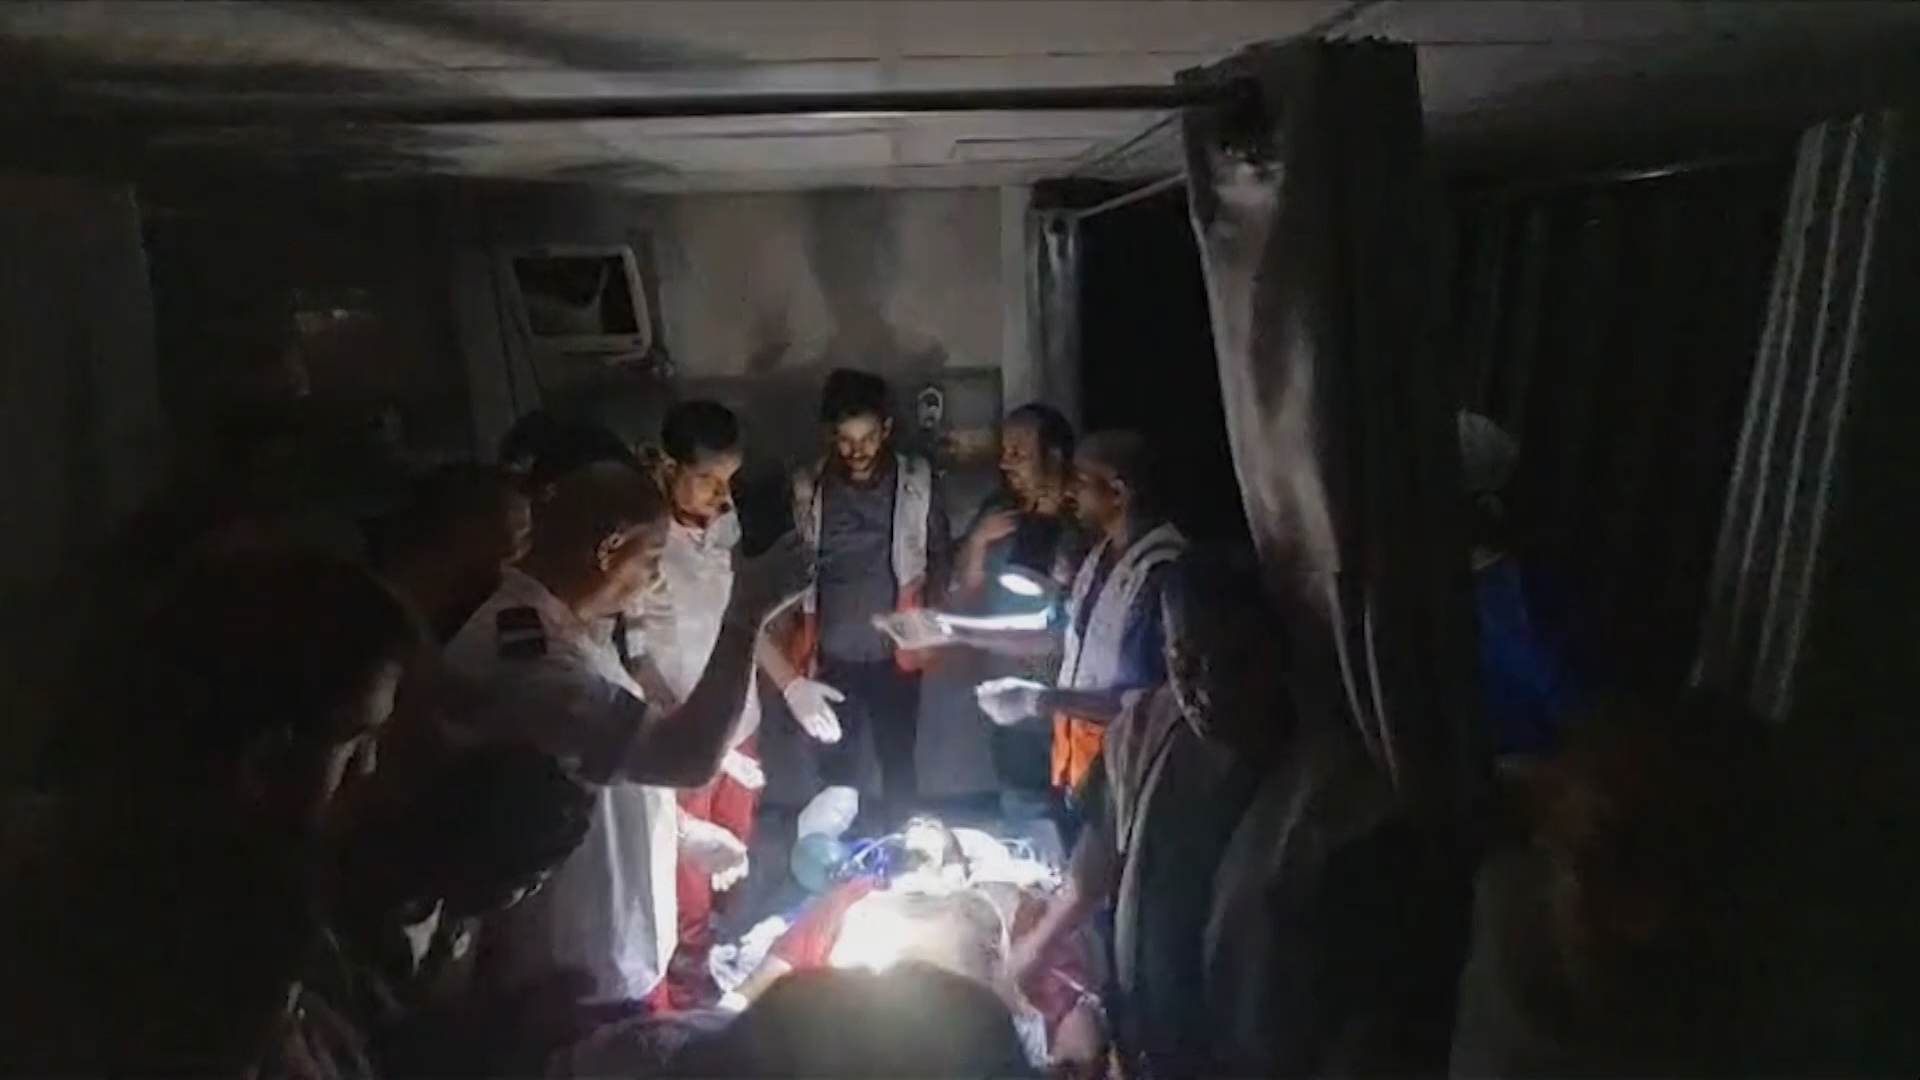 بسبب انقطاع التيار الكهربائي.. فشل عملية إنقاذ مصاب بمستشفى القدس بغزة